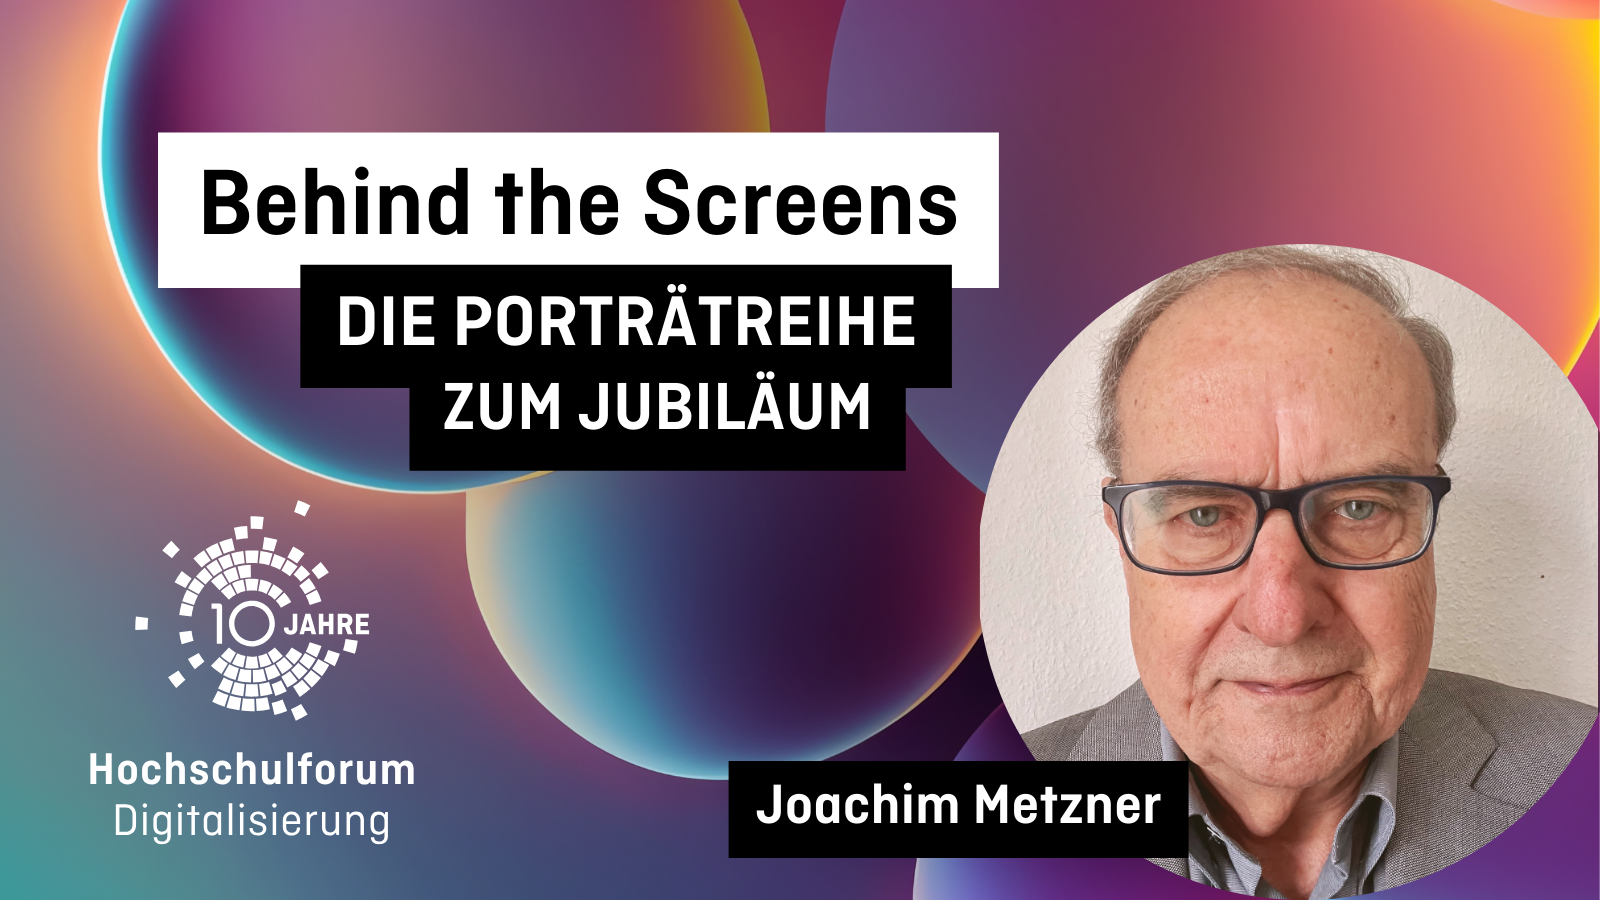 Behind the Screens mit Joachim Metzner